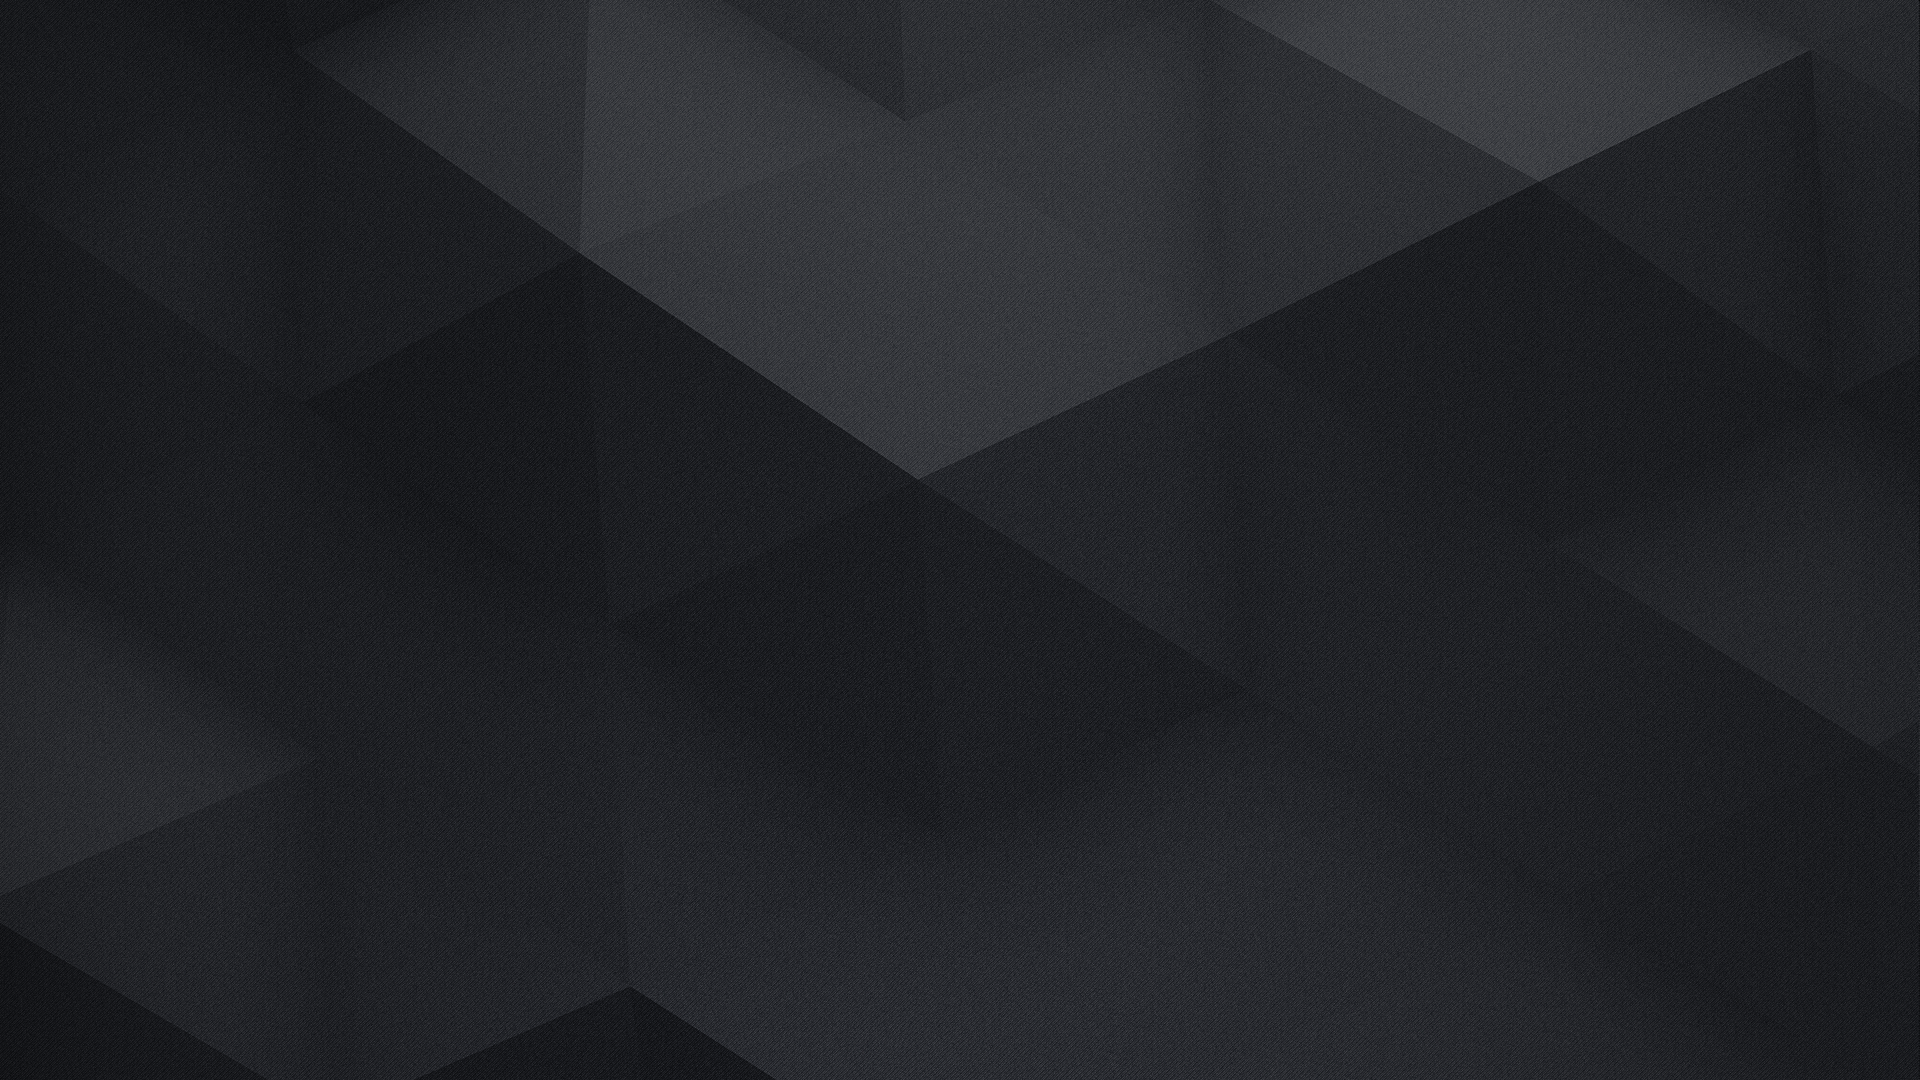 General 1920x1080 geometry triangle hexagon minimalism texture digital art